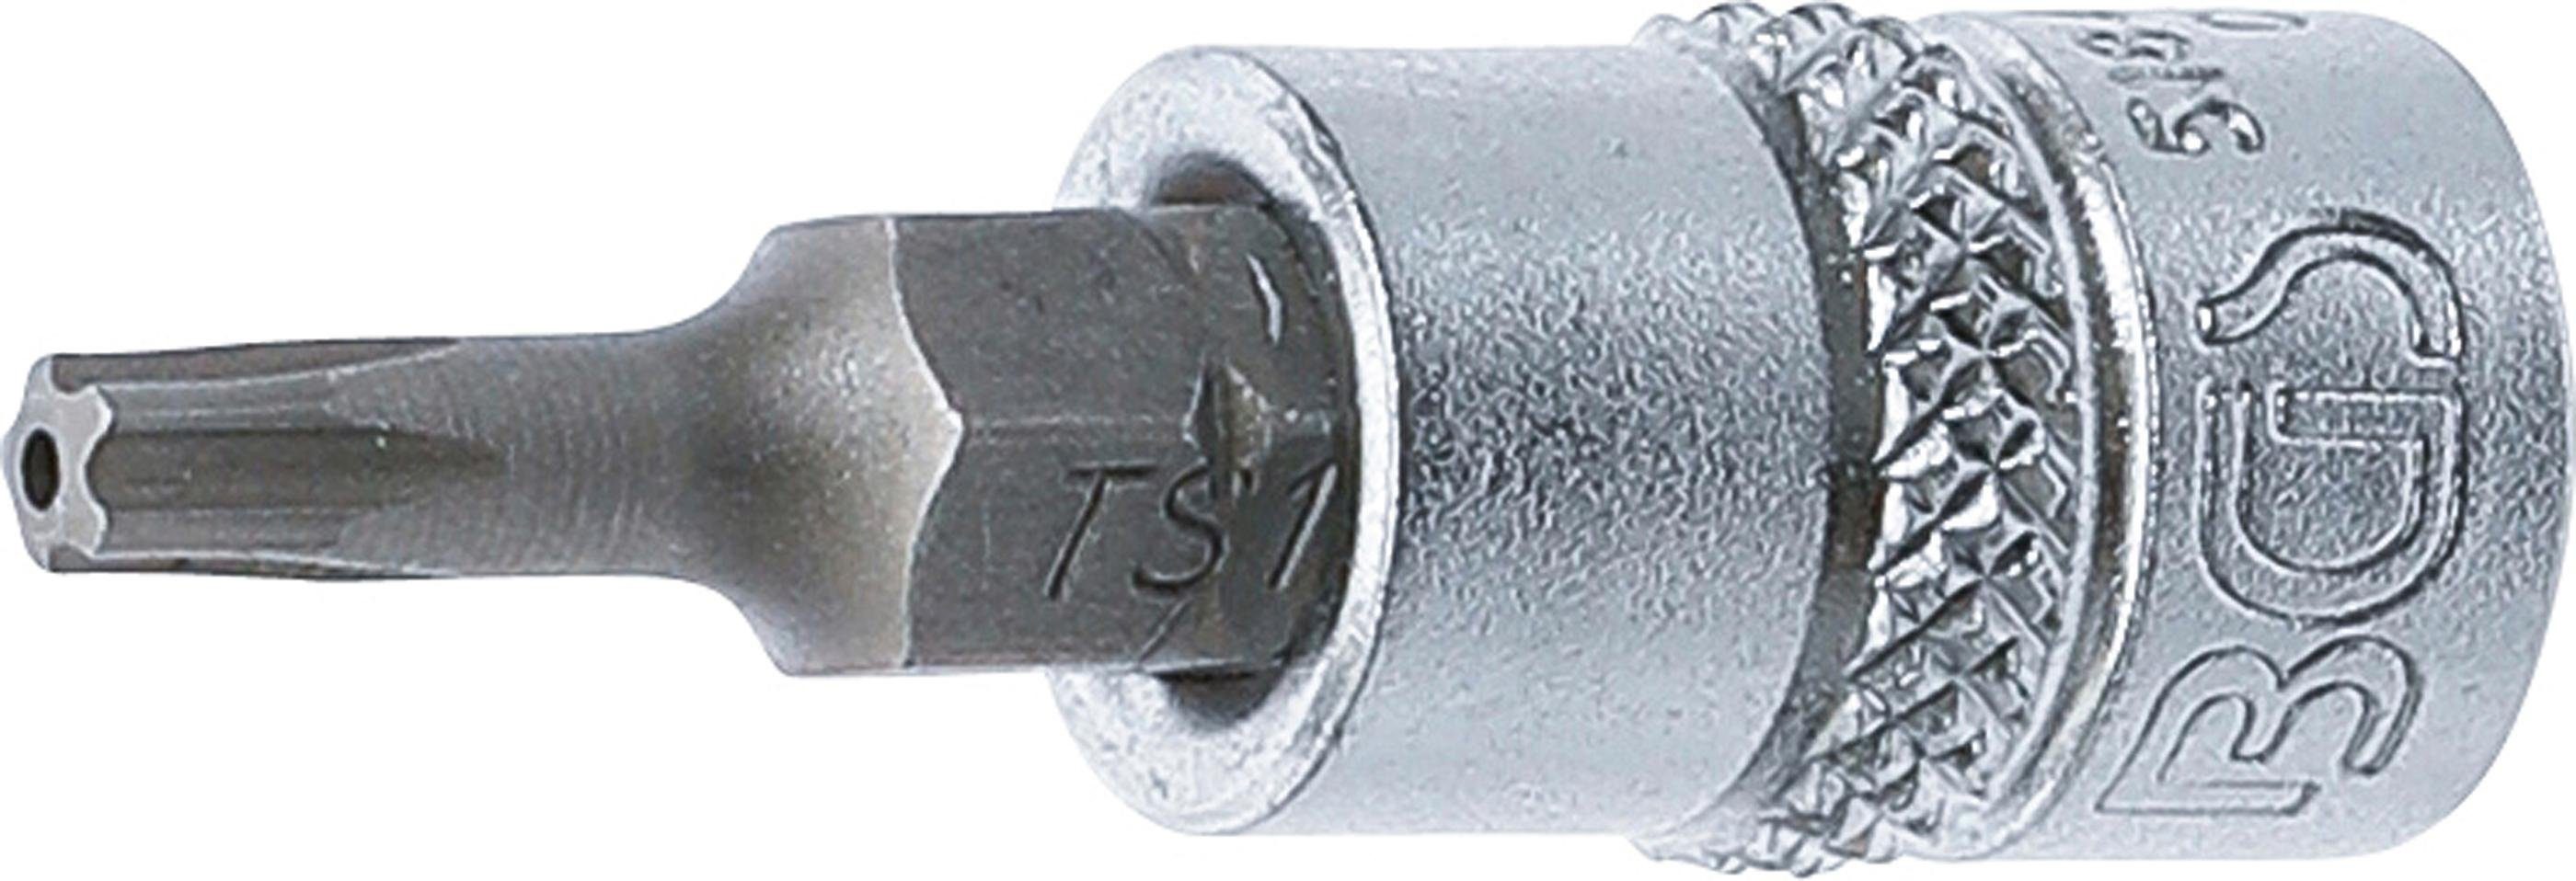 Bit-Einsatz, TS15 (1/4), Bit-Schraubendreher mit 6,3 technic mm Innenvierkant Antrieb Torx BGS Bohrung (für TS-Profil Plus)